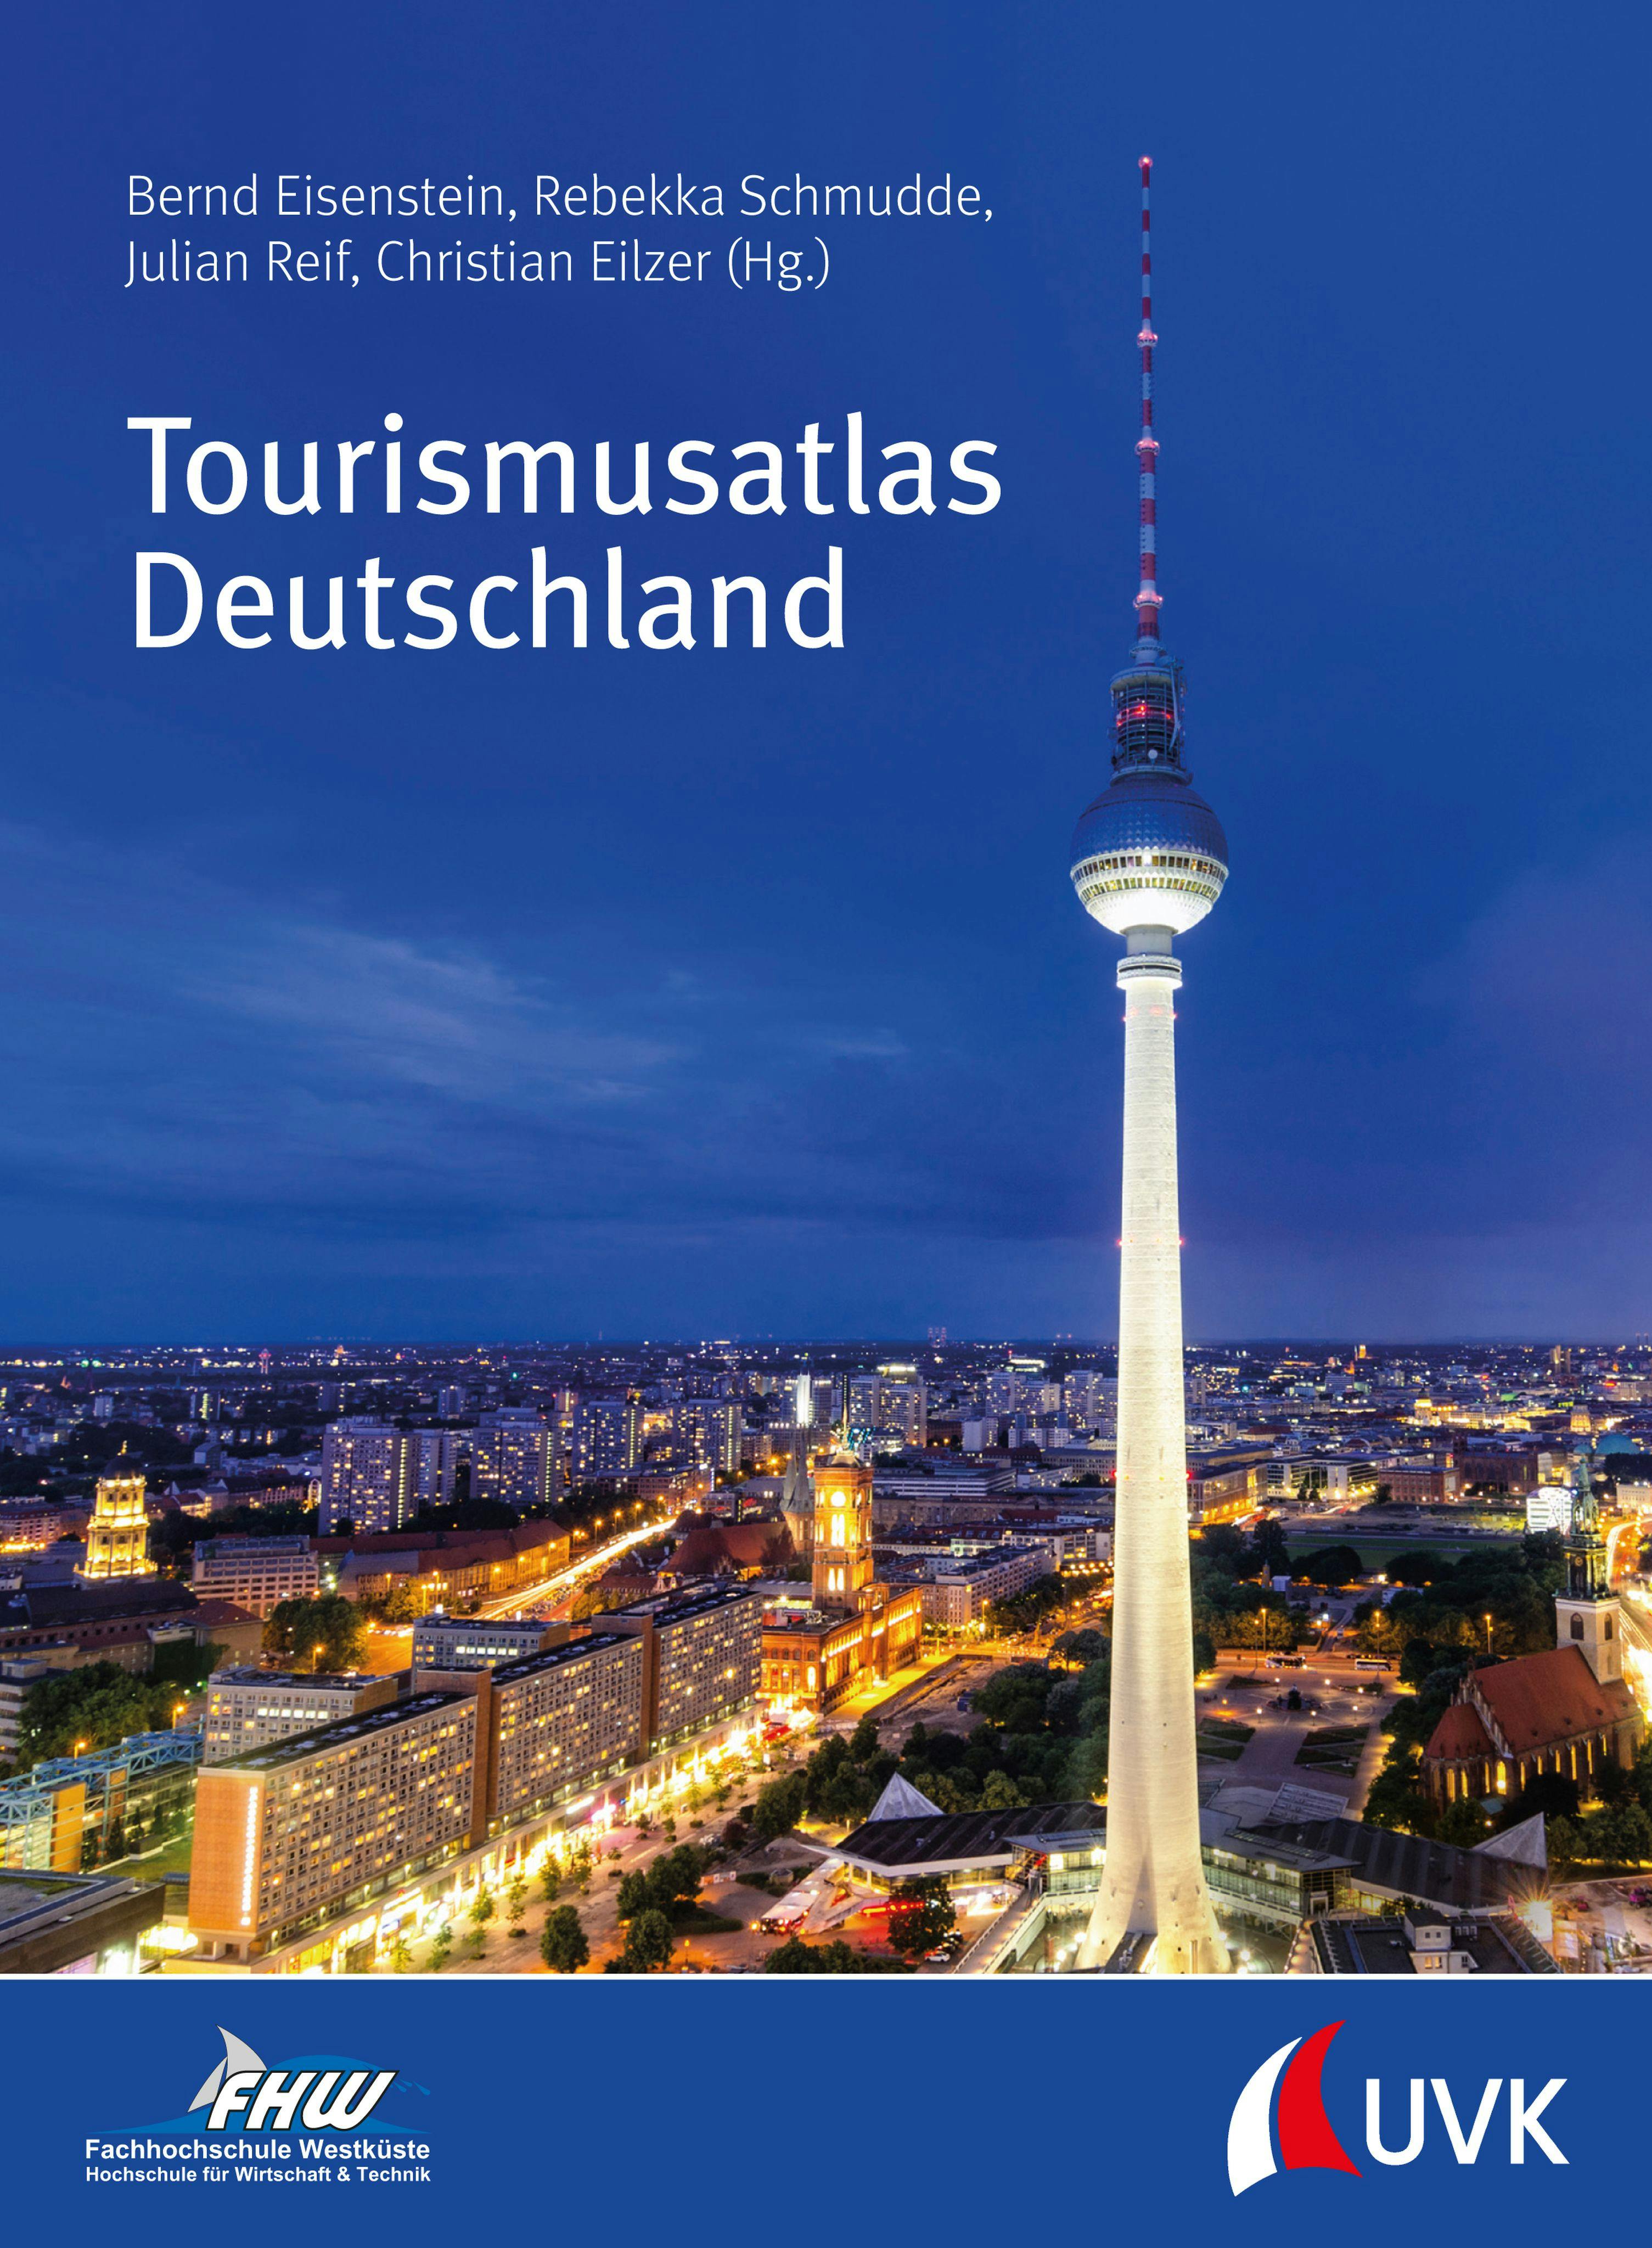 Tourismusatlas Deutschland - Christian Eilzer, Julian Reif, Bernd Eisenstein, Rebekka Schmudde